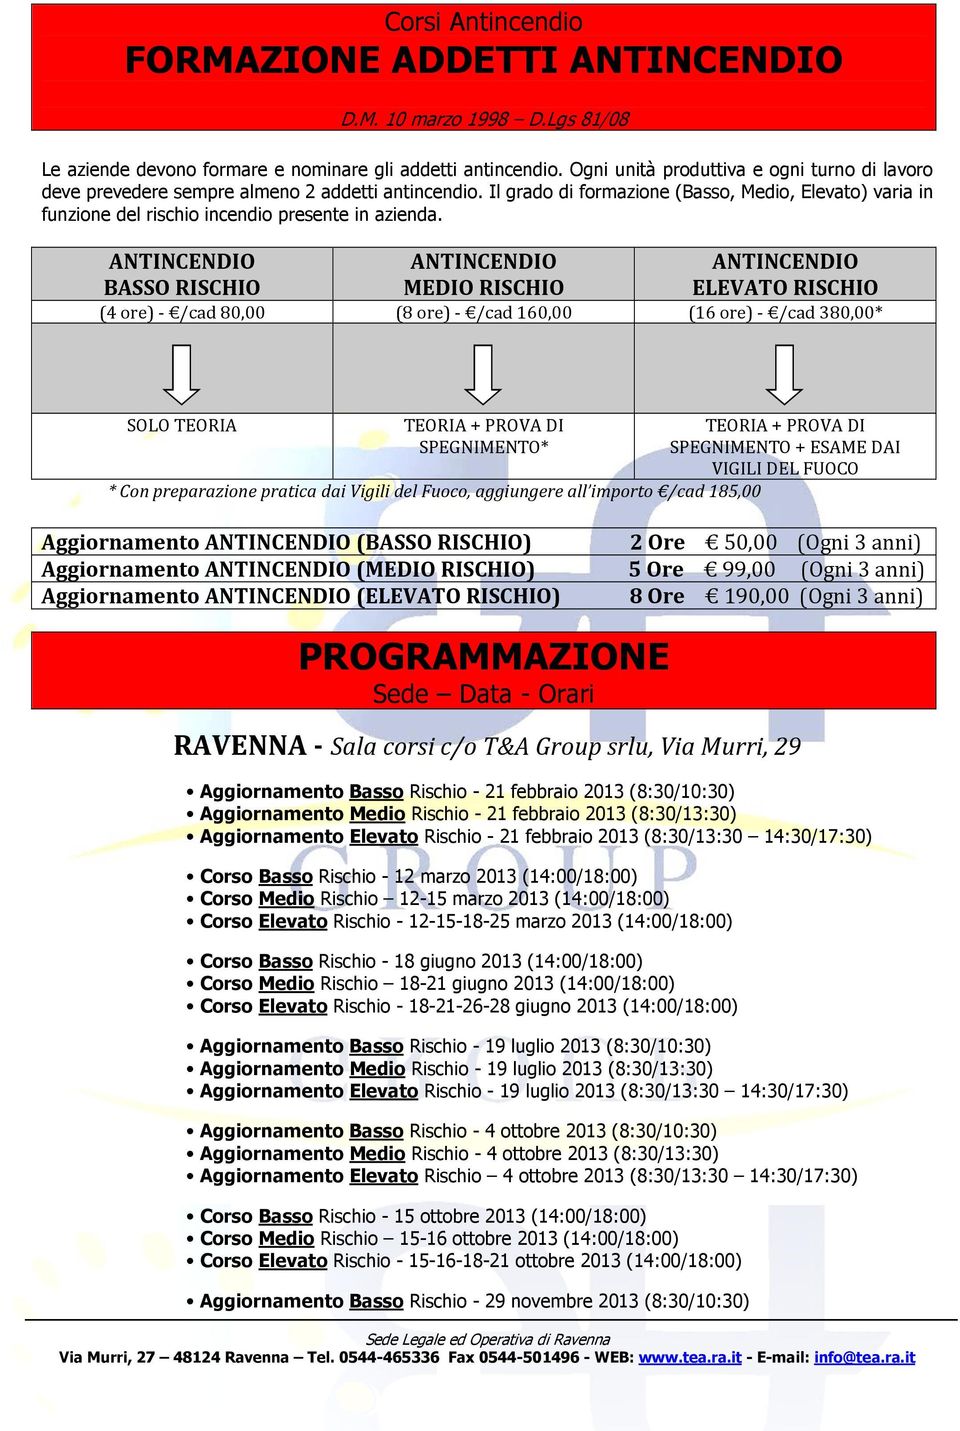 ANTINCENDIO BASSO RISCHIO ANTINCENDIO MEDIO RISCHIO ANTINCENDIO ELEVATO RISCHIO (4 re) - /cad 80,00 (8 re) - /cad 160,00 (16 re) - /cad 380,00* SOLO TEORIA TEORIA + PROVA DI SPEGNIMENTO* TEORIA +